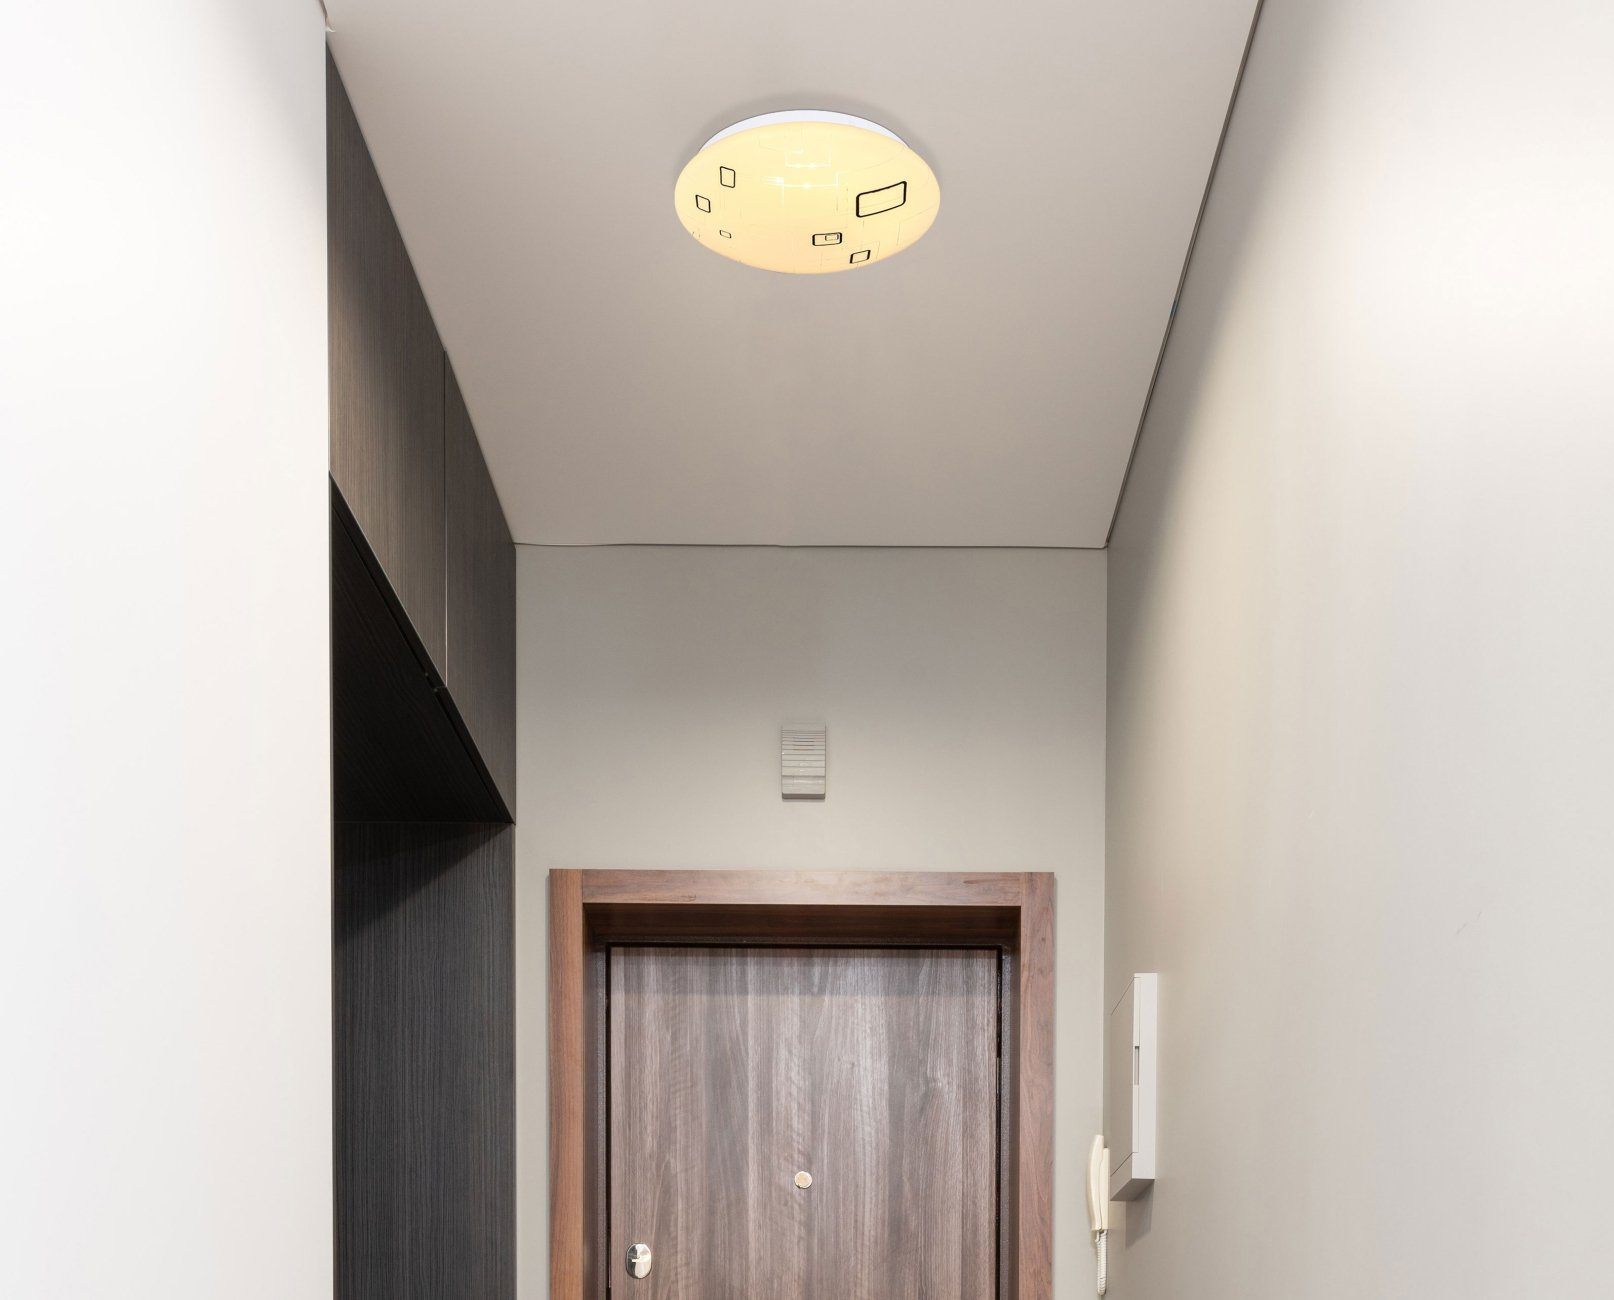 36 Wohnzimmer GLOBO Bad Deckenleuchte Küche Globo LED Flur Deckenleuchte Deckenlampe cm